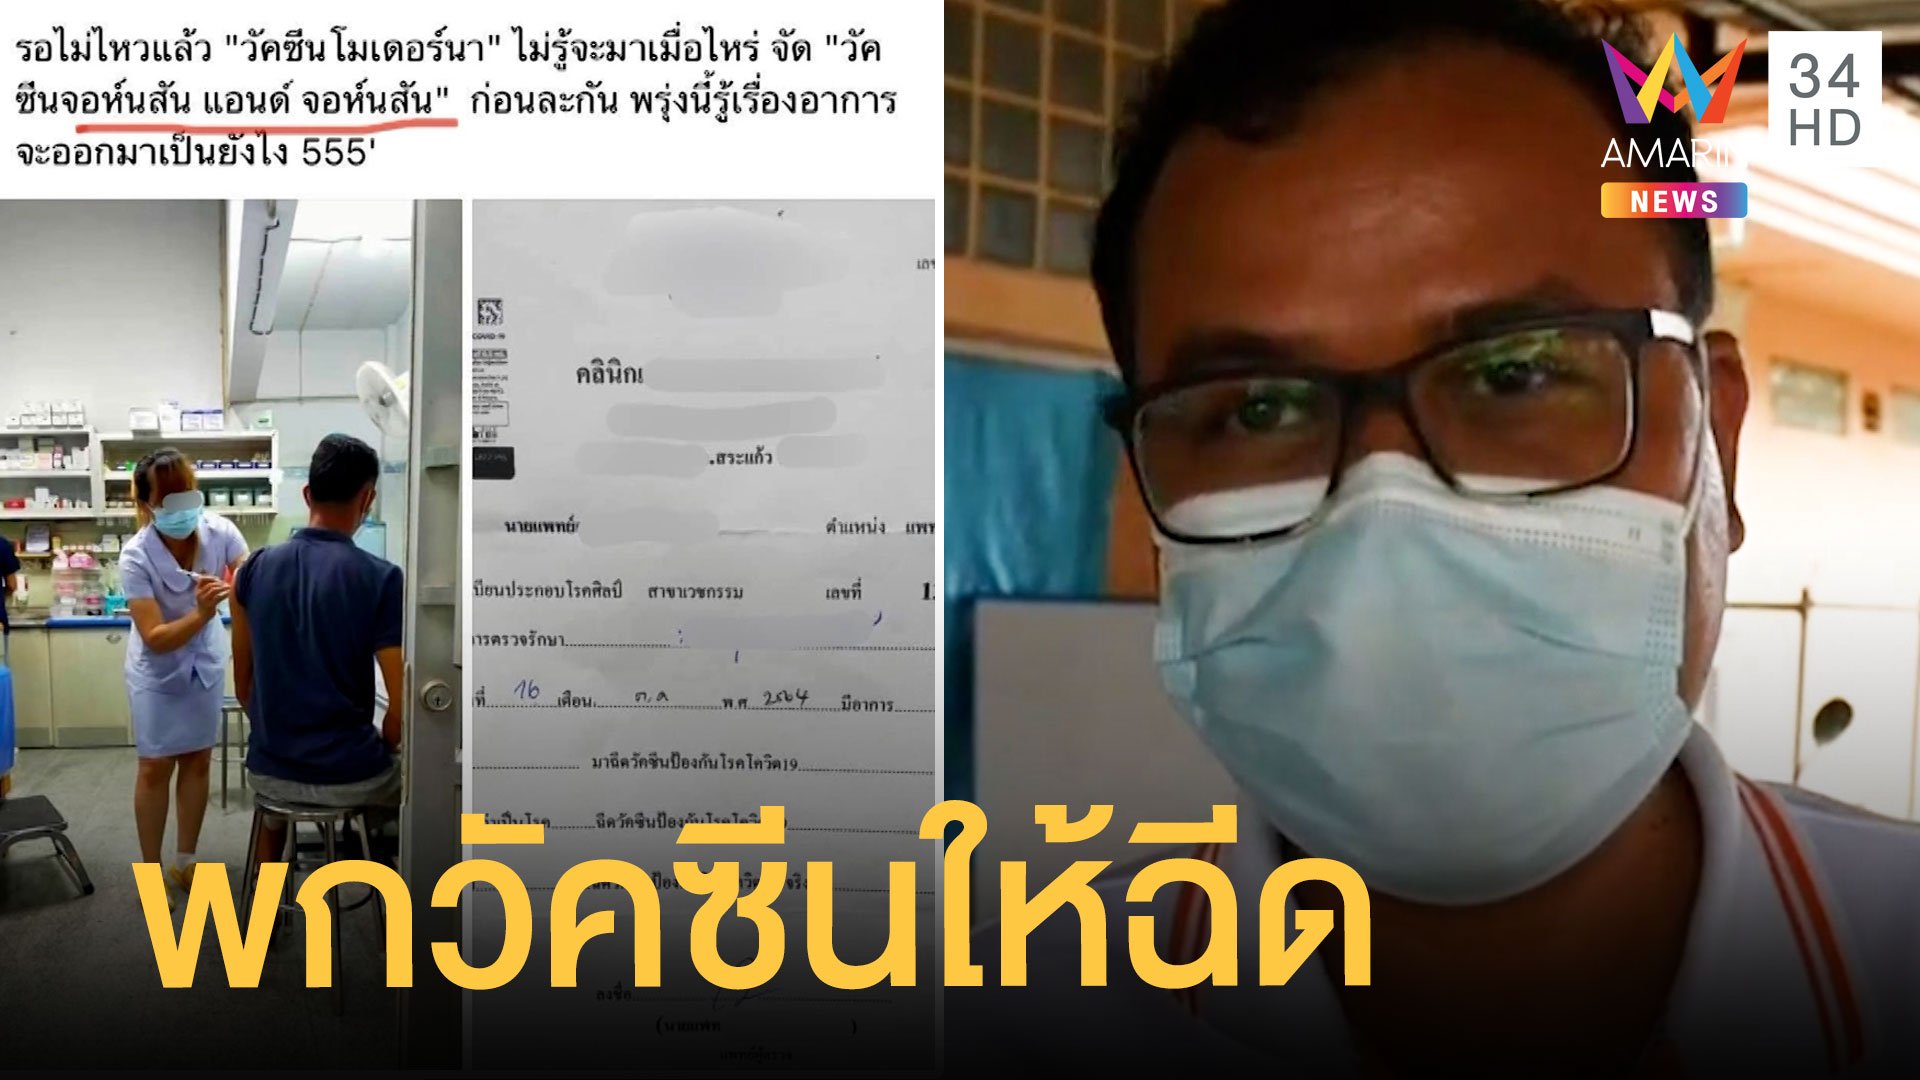 คลินิกแอบฉีดวัคซีนจอห์นสัน เก็บเงิน 2 พัน ทั้งที่ยังไม่เข้าไทย | ข่าวเที่ยงอมรินทร์ | 9 พ.ย. 64 | AMARIN TVHD34